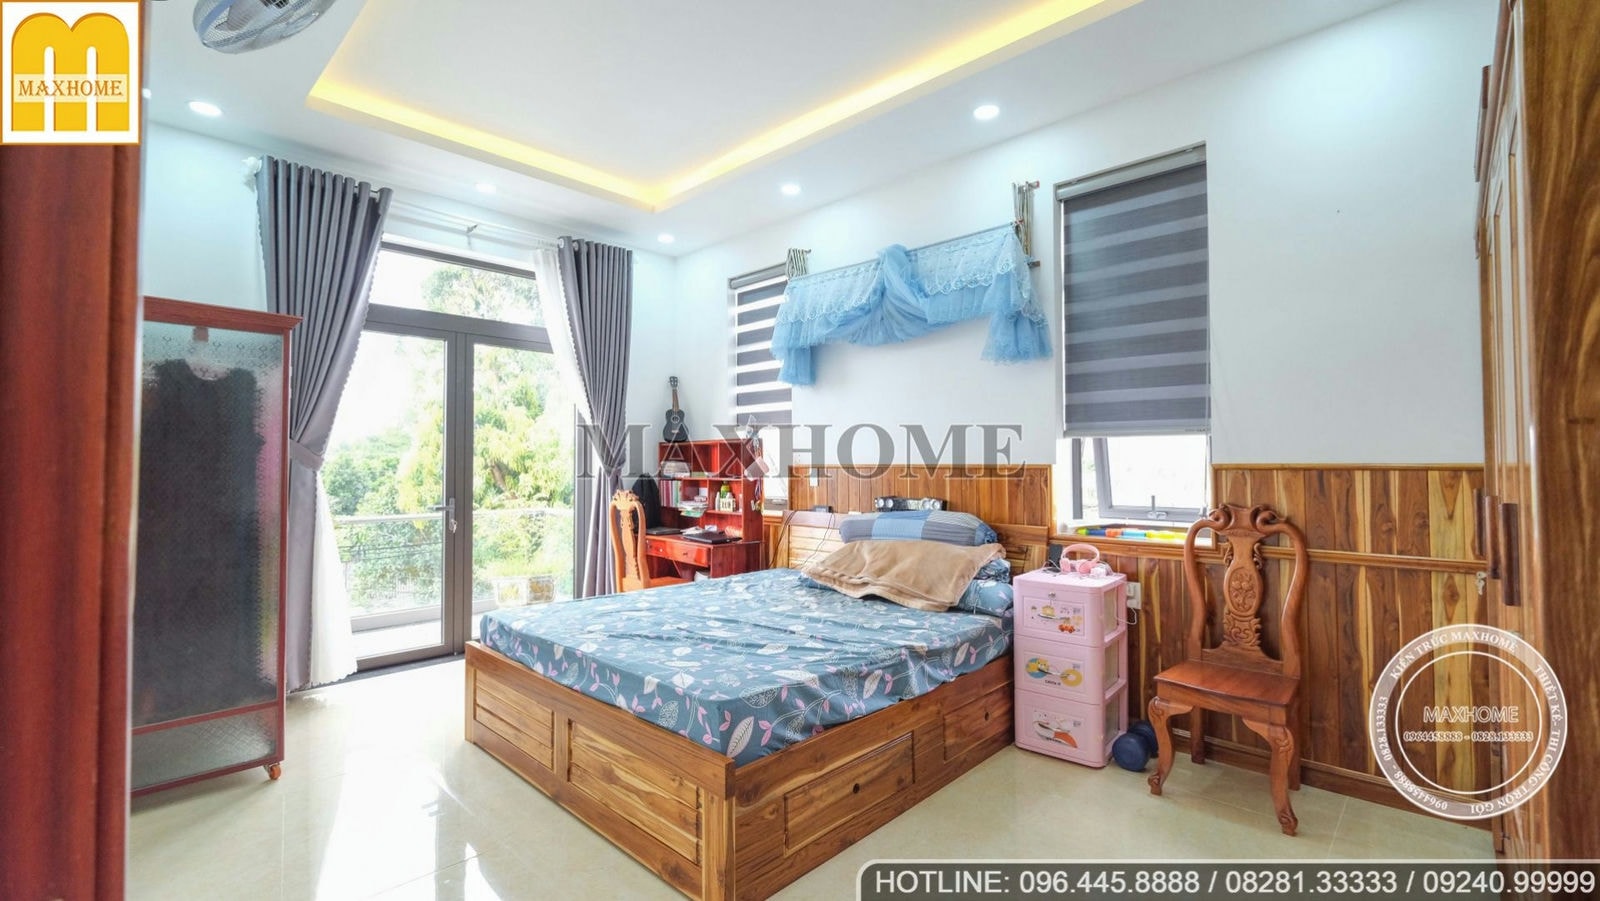 Tham quan bộ nội thất gỗ cực kỳ hoành tráng tại Đồng Nai | MH00553